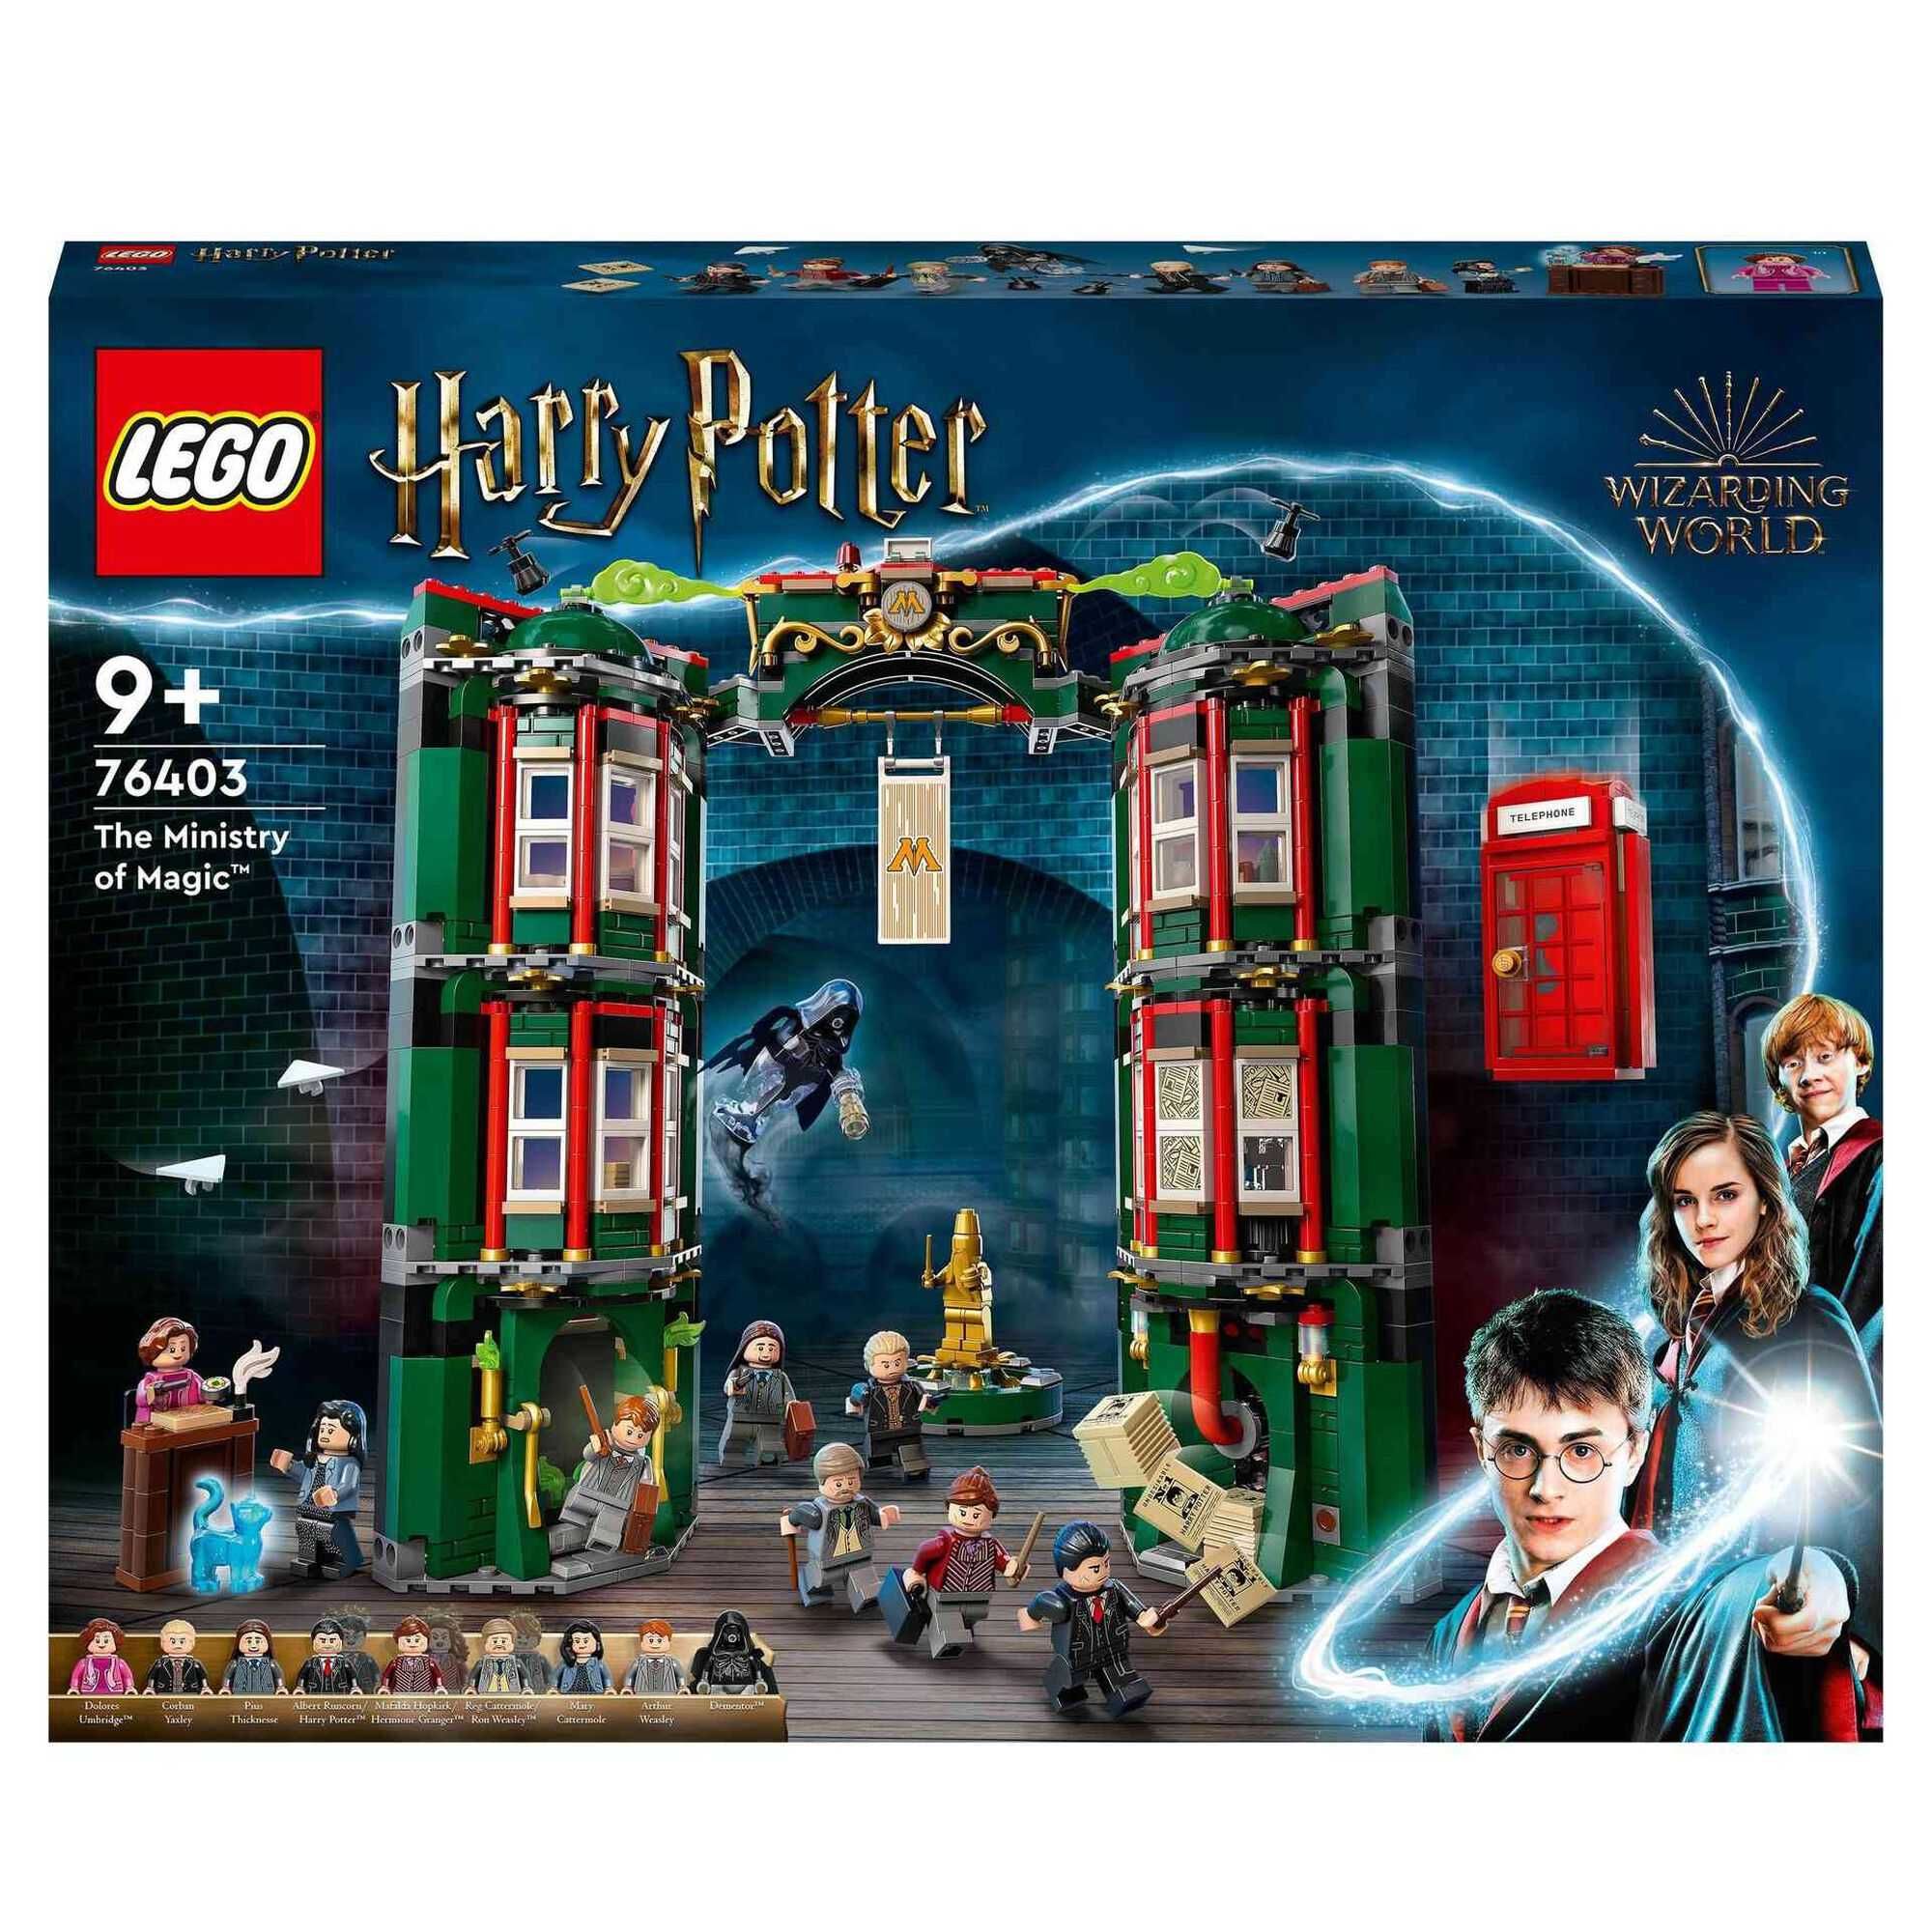 Lego Harry Potter - Hogwarts: Primeira Lição De Voo - 76395